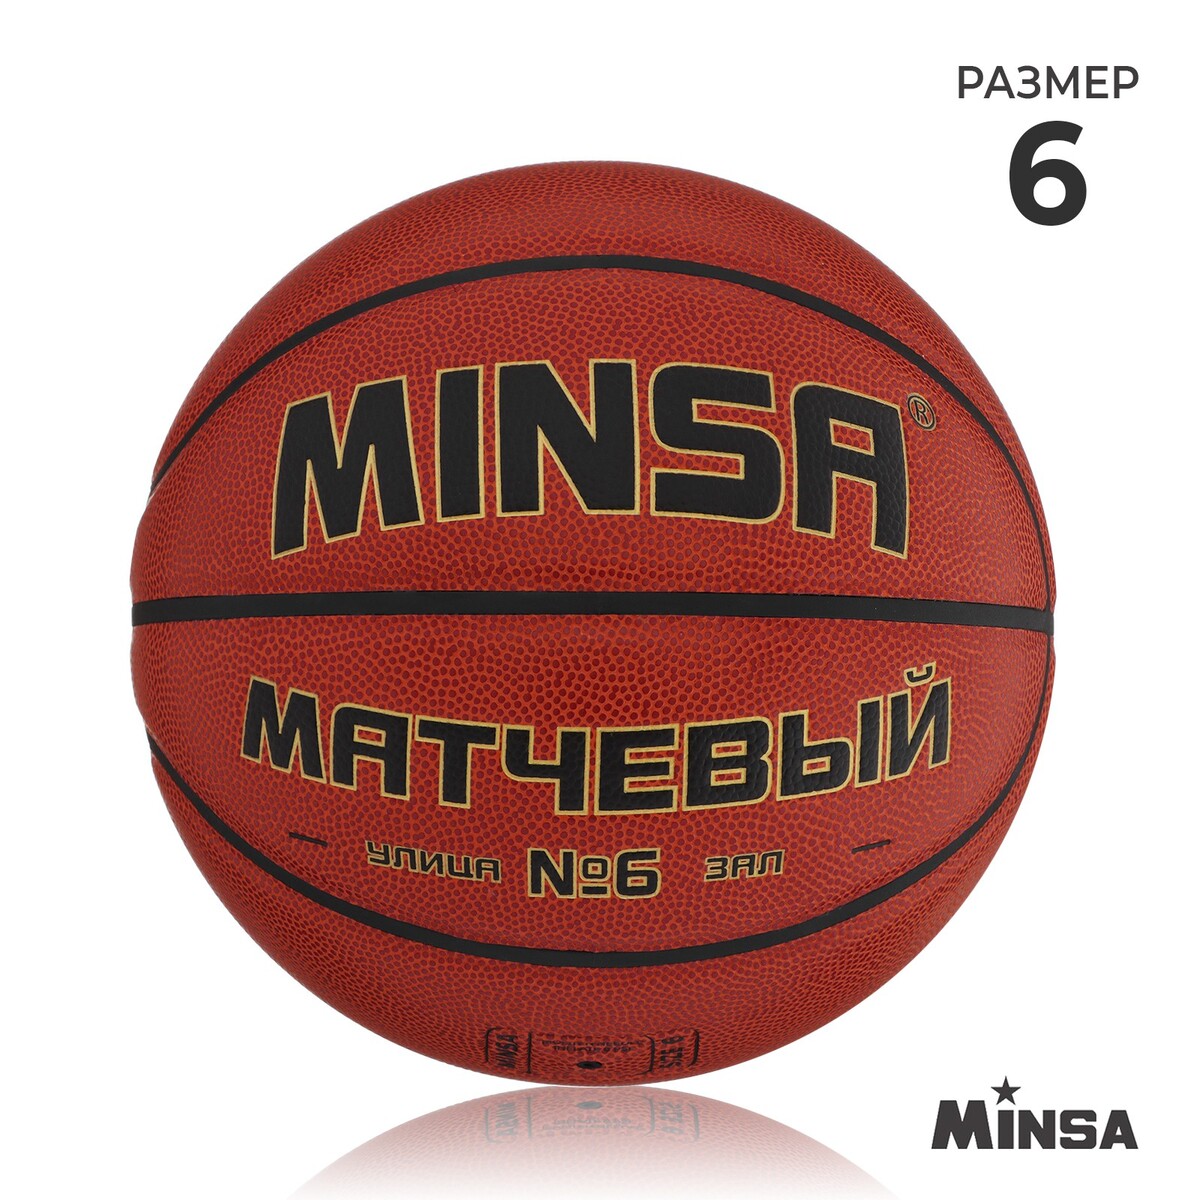 Баскетбольный мяч minsa, матчевый, microfiber pu, клееный, 8 панелей, р. 6 мяч баскетбольный minsa air power пвх клееный 8 панелей р 7